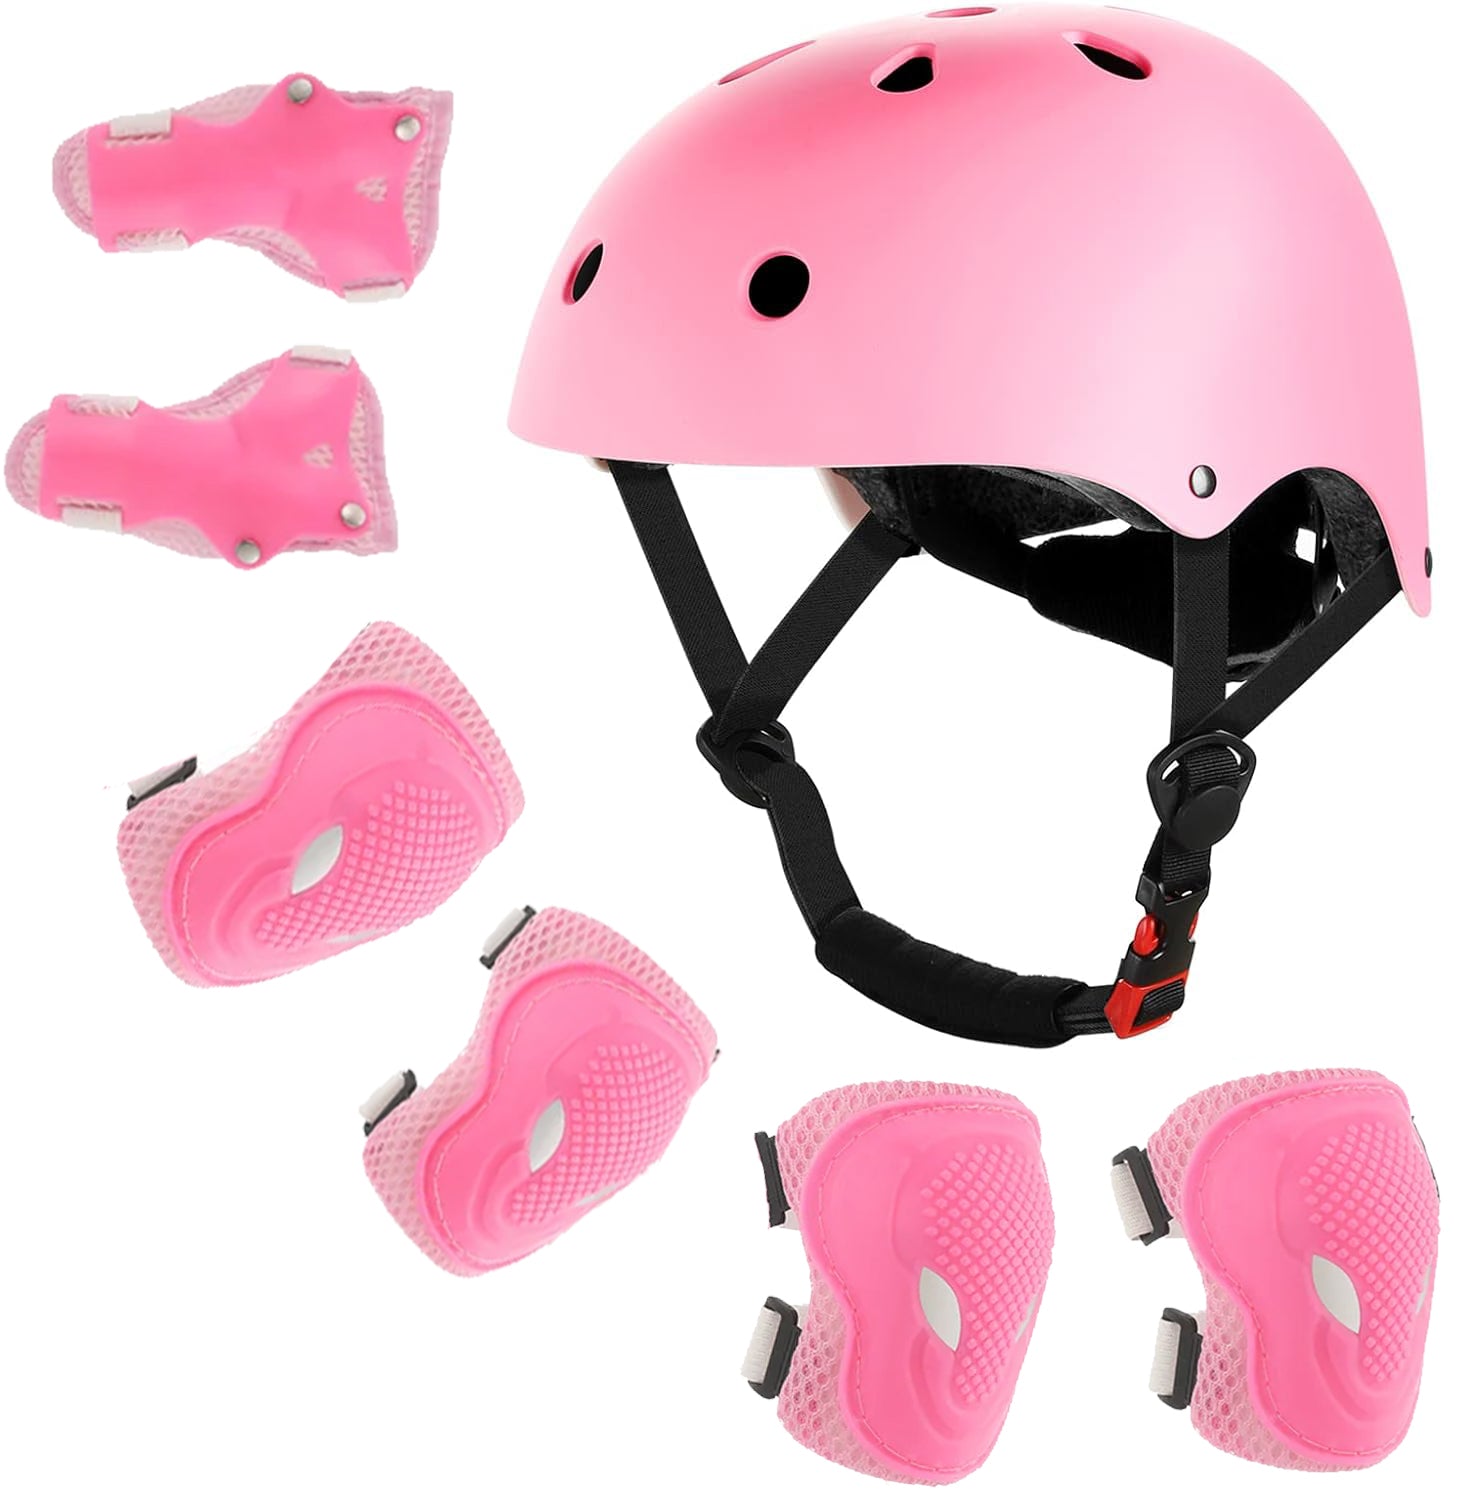 isinwheel Kids Bike Helmet Set Skateboard Knee Pads Wrist Guards Pink